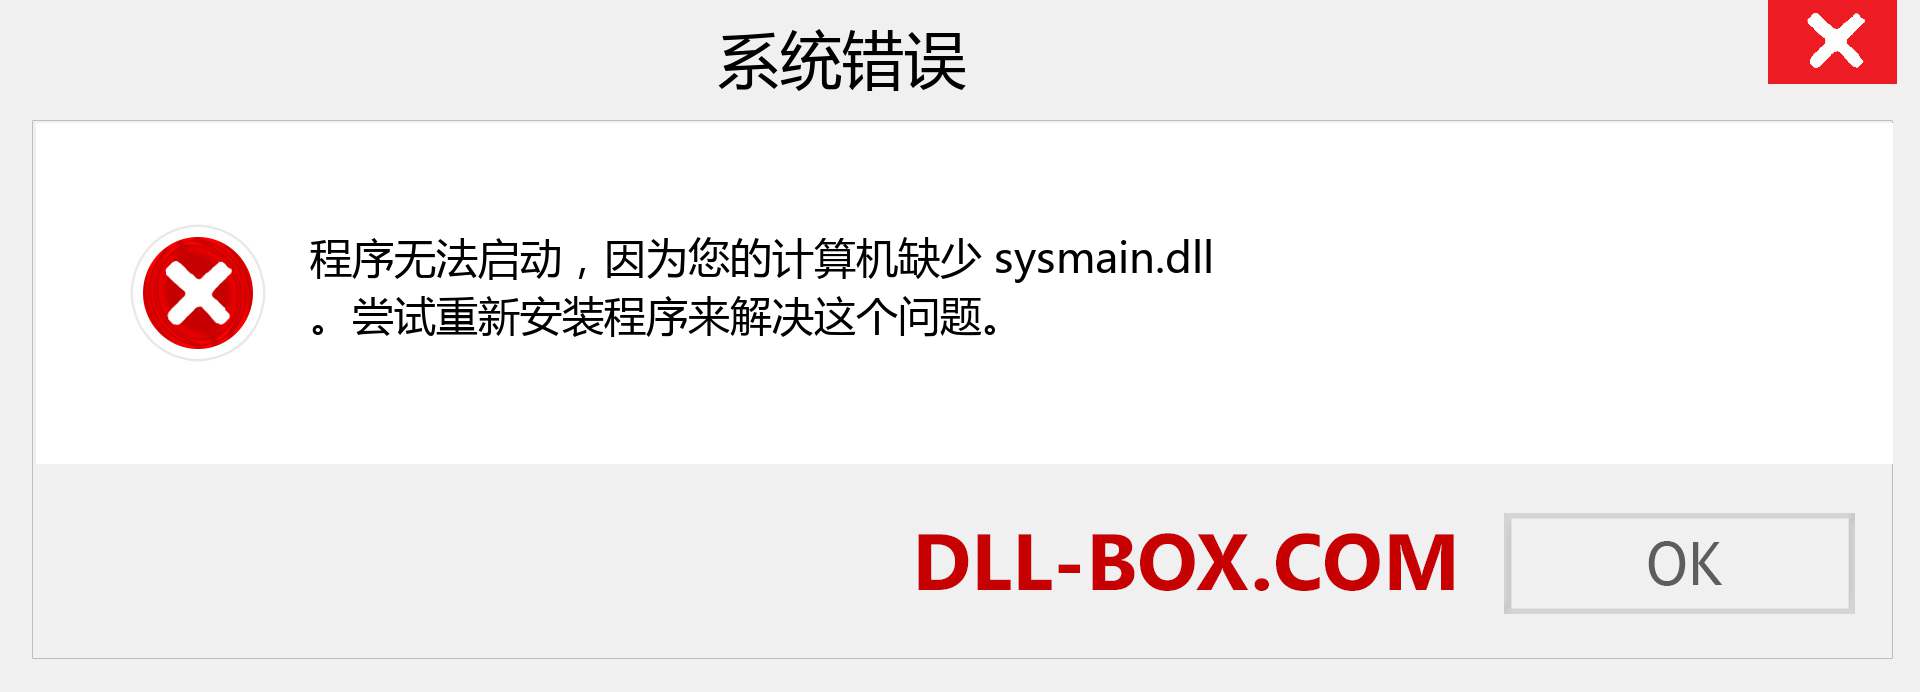 sysmain.dll 文件丢失？。 适用于 Windows 7、8、10 的下载 - 修复 Windows、照片、图像上的 sysmain dll 丢失错误